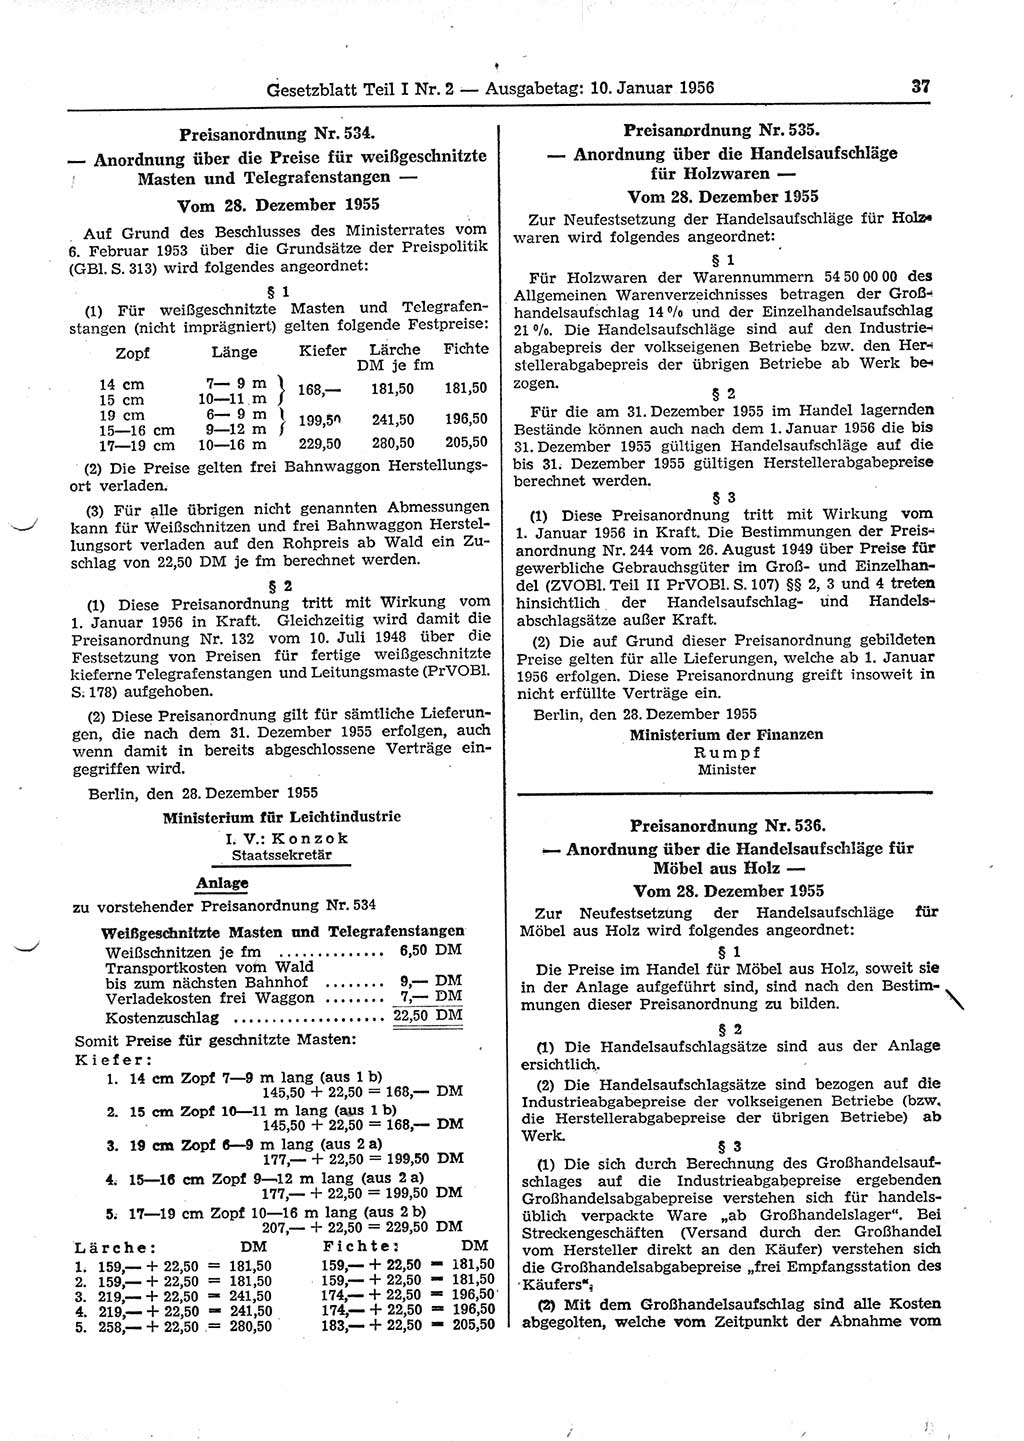 Gesetzblatt (GBl.) der Deutschen Demokratischen Republik (DDR) Teil Ⅰ 1956, Seite 37 (GBl. DDR Ⅰ 1956, S. 37)